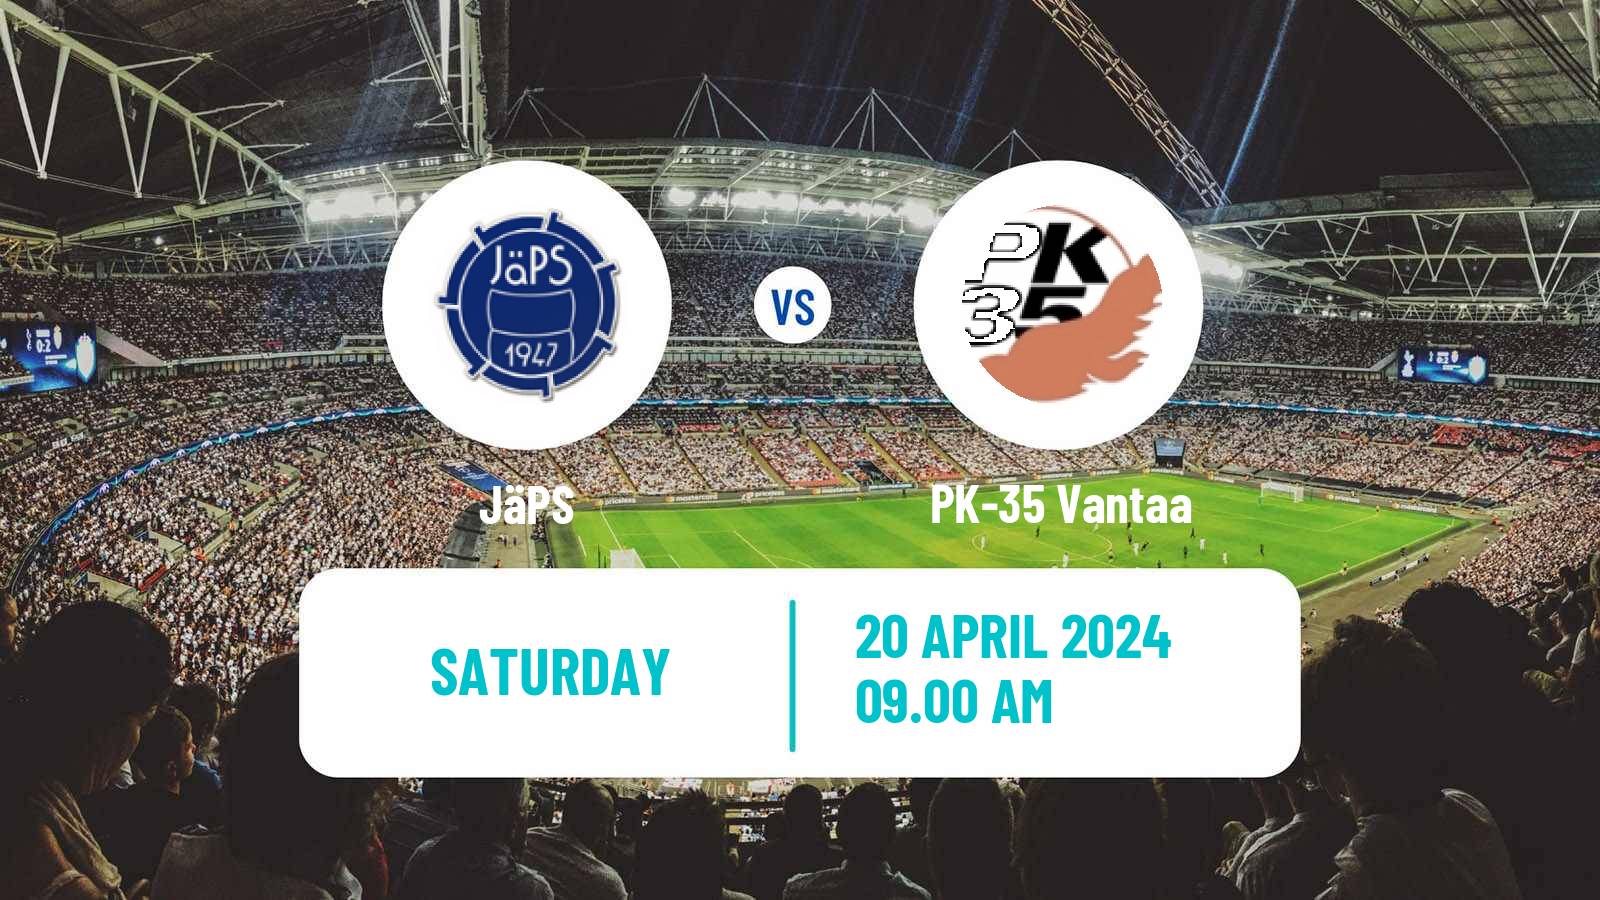 Soccer Finnish Ykkosliiga JäPS - PK-35 Vantaa